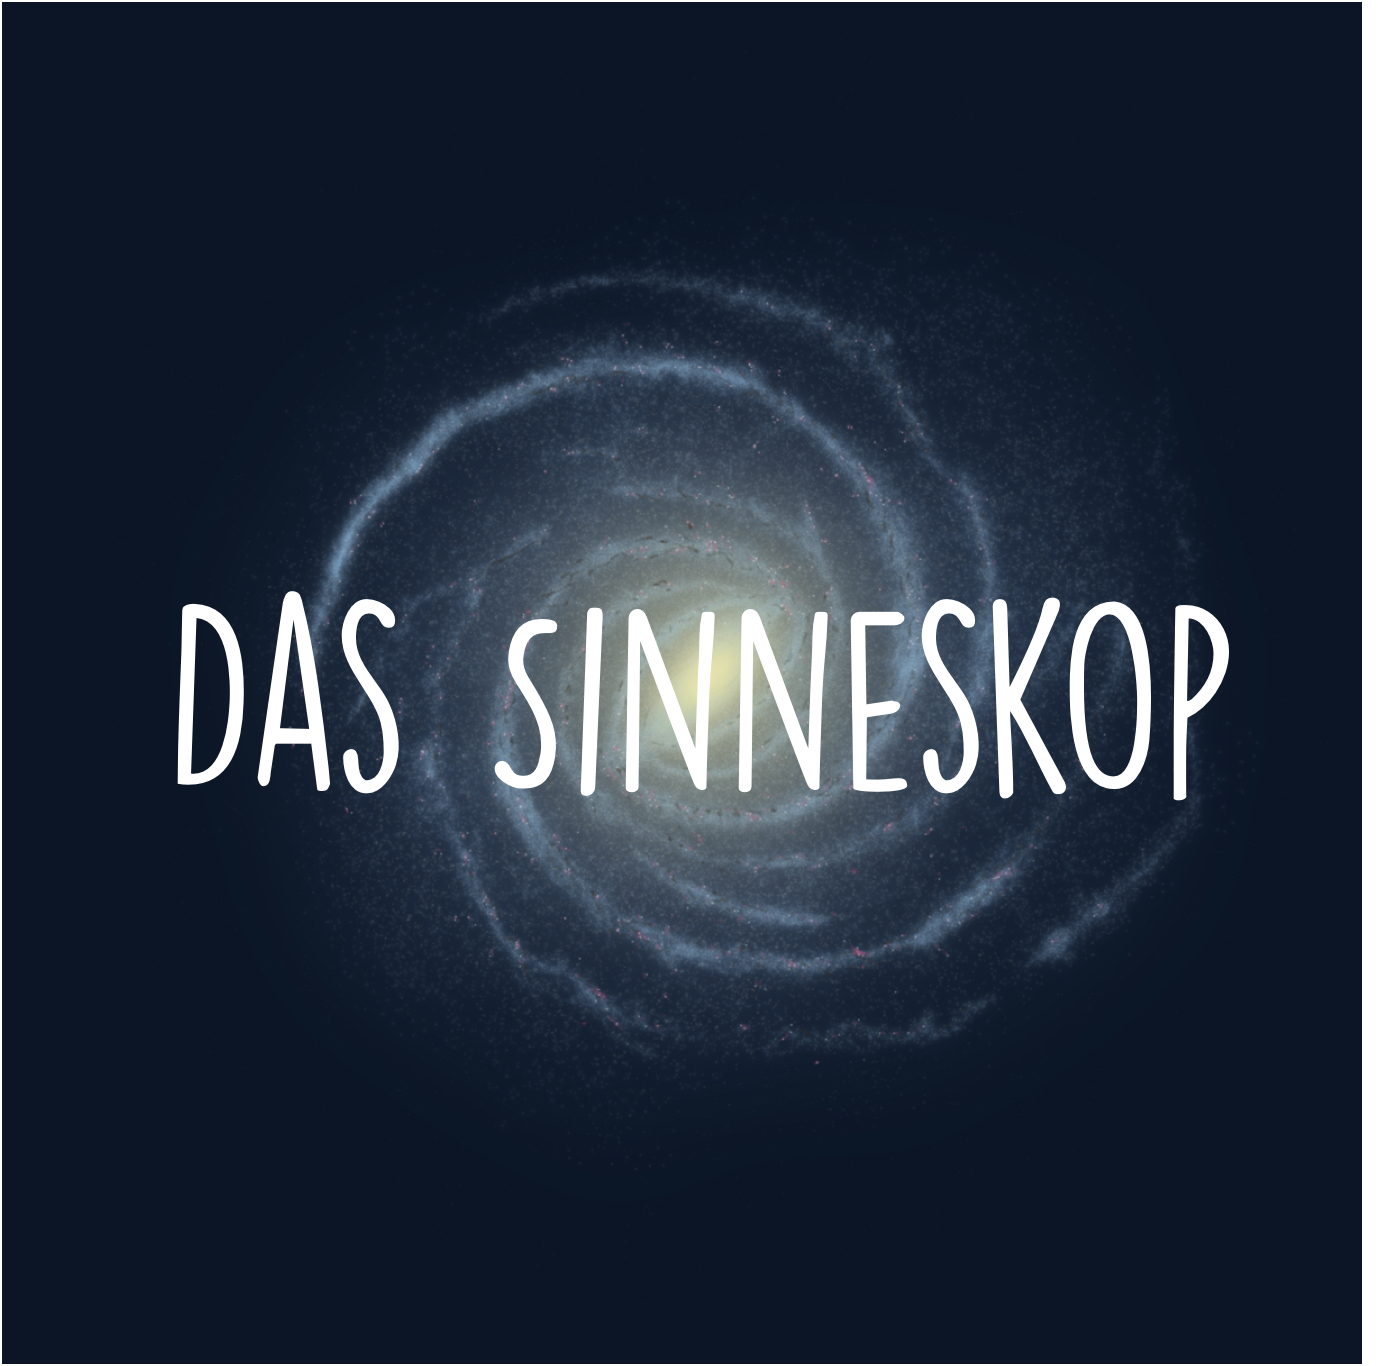 Logo vom Sinneskop: ein Bild von eine Spiral Galaxie auf Dunkle Hintergrund.